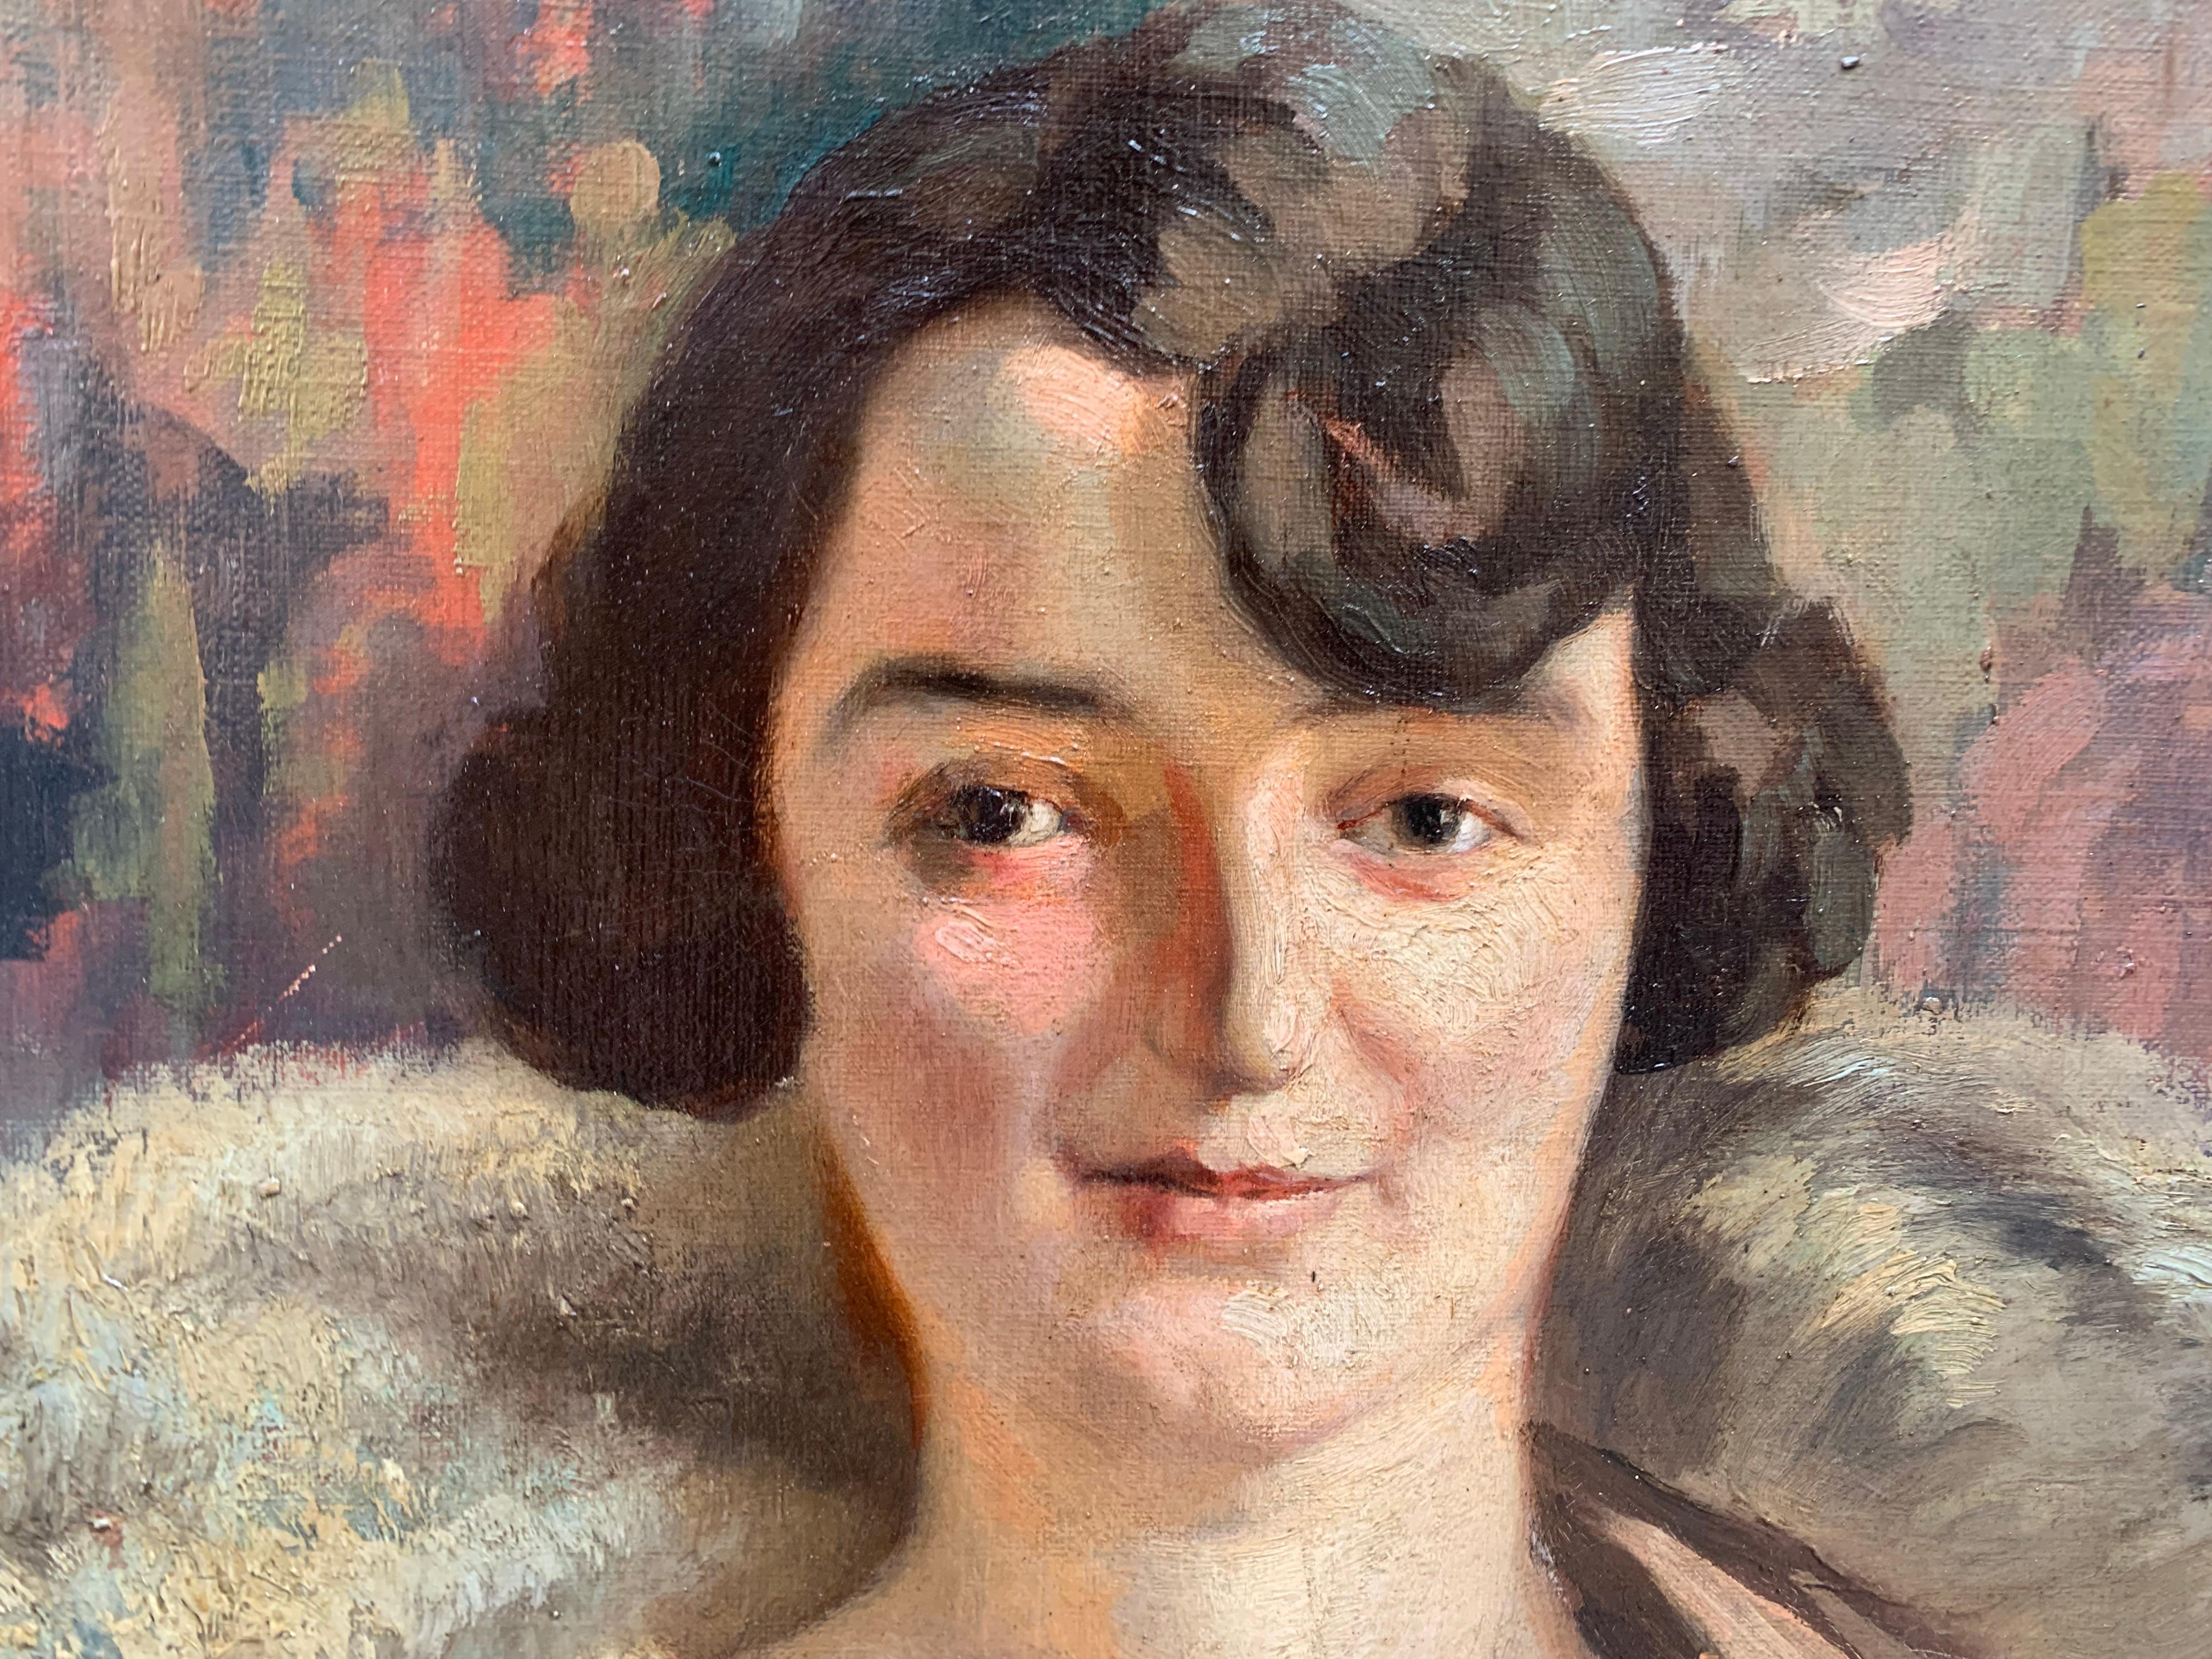 Porträt einer jungen Dame aus den 1920er Jahren mit Bobschnitt und Pelzkragen 
Öl auf Leinwand.
Holzrahmen aus dem frühen 20. Jahrhundert.
Dieses Porträt zeigt ein sehr stilvolles Bild einer jungen Frau aus den 1920er Jahren, das in einer Palette